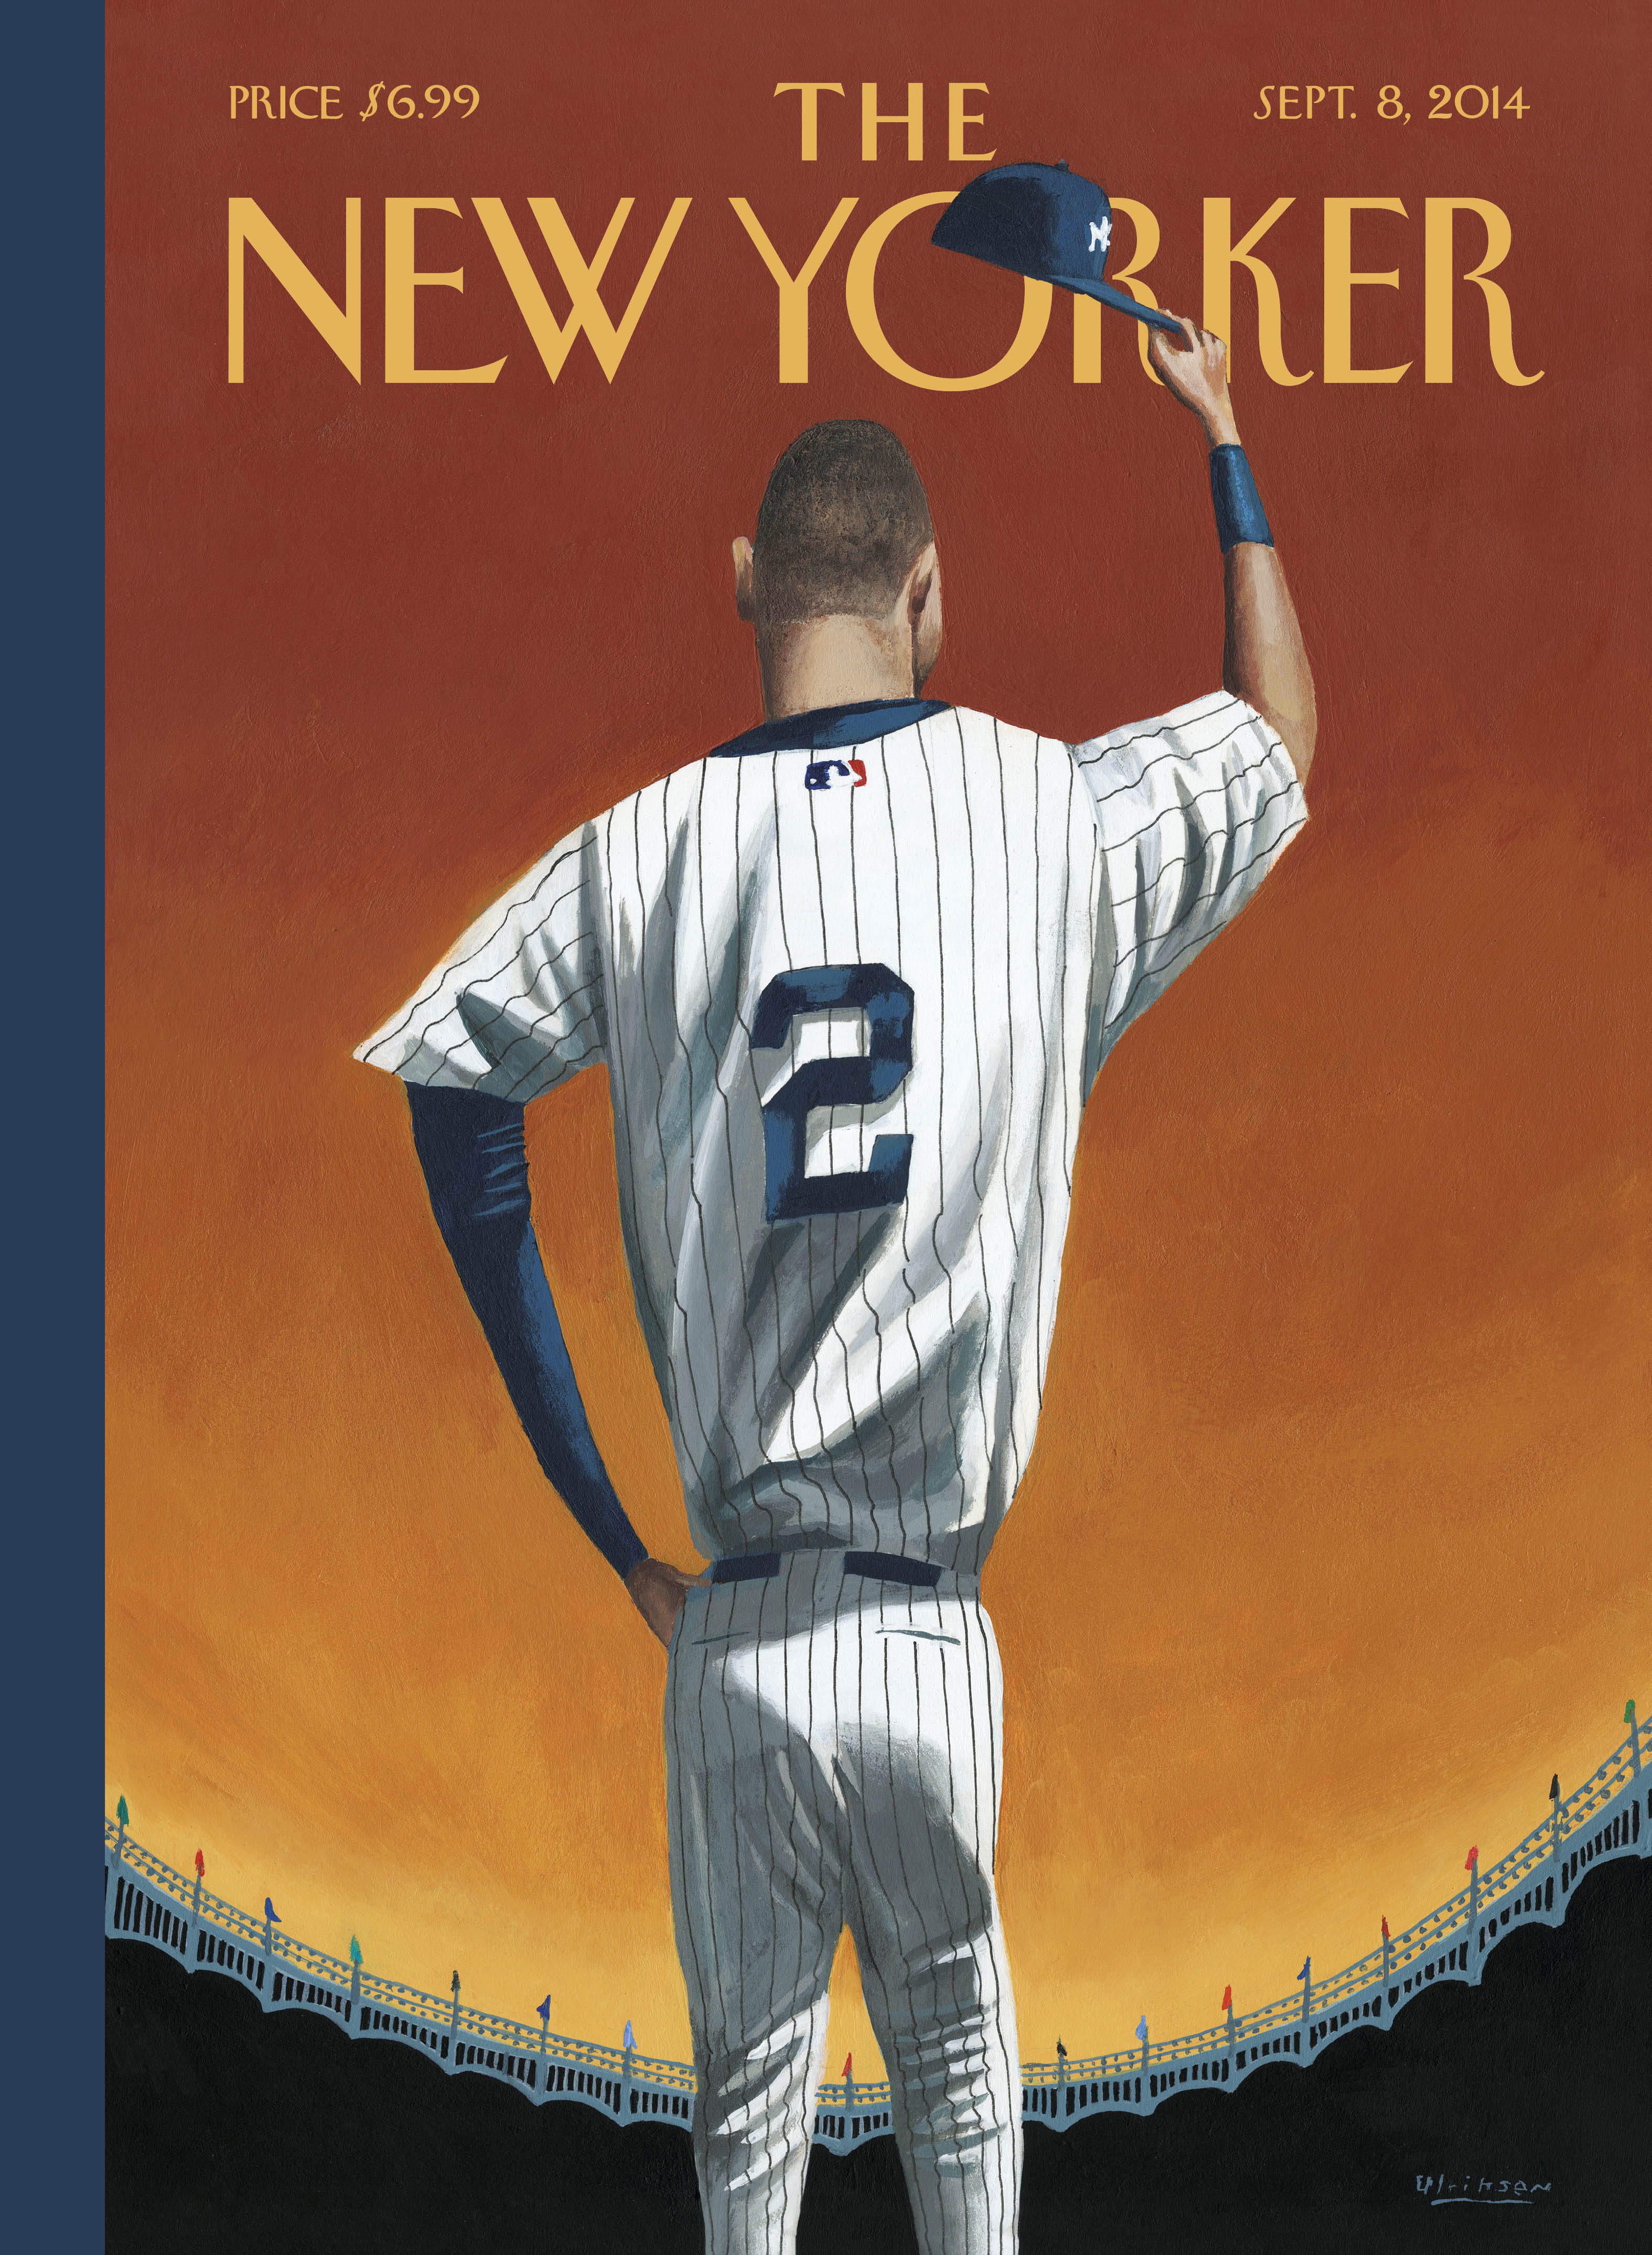 The New Yorker-September 8, 2014, "Derek Jeter Bows Out"